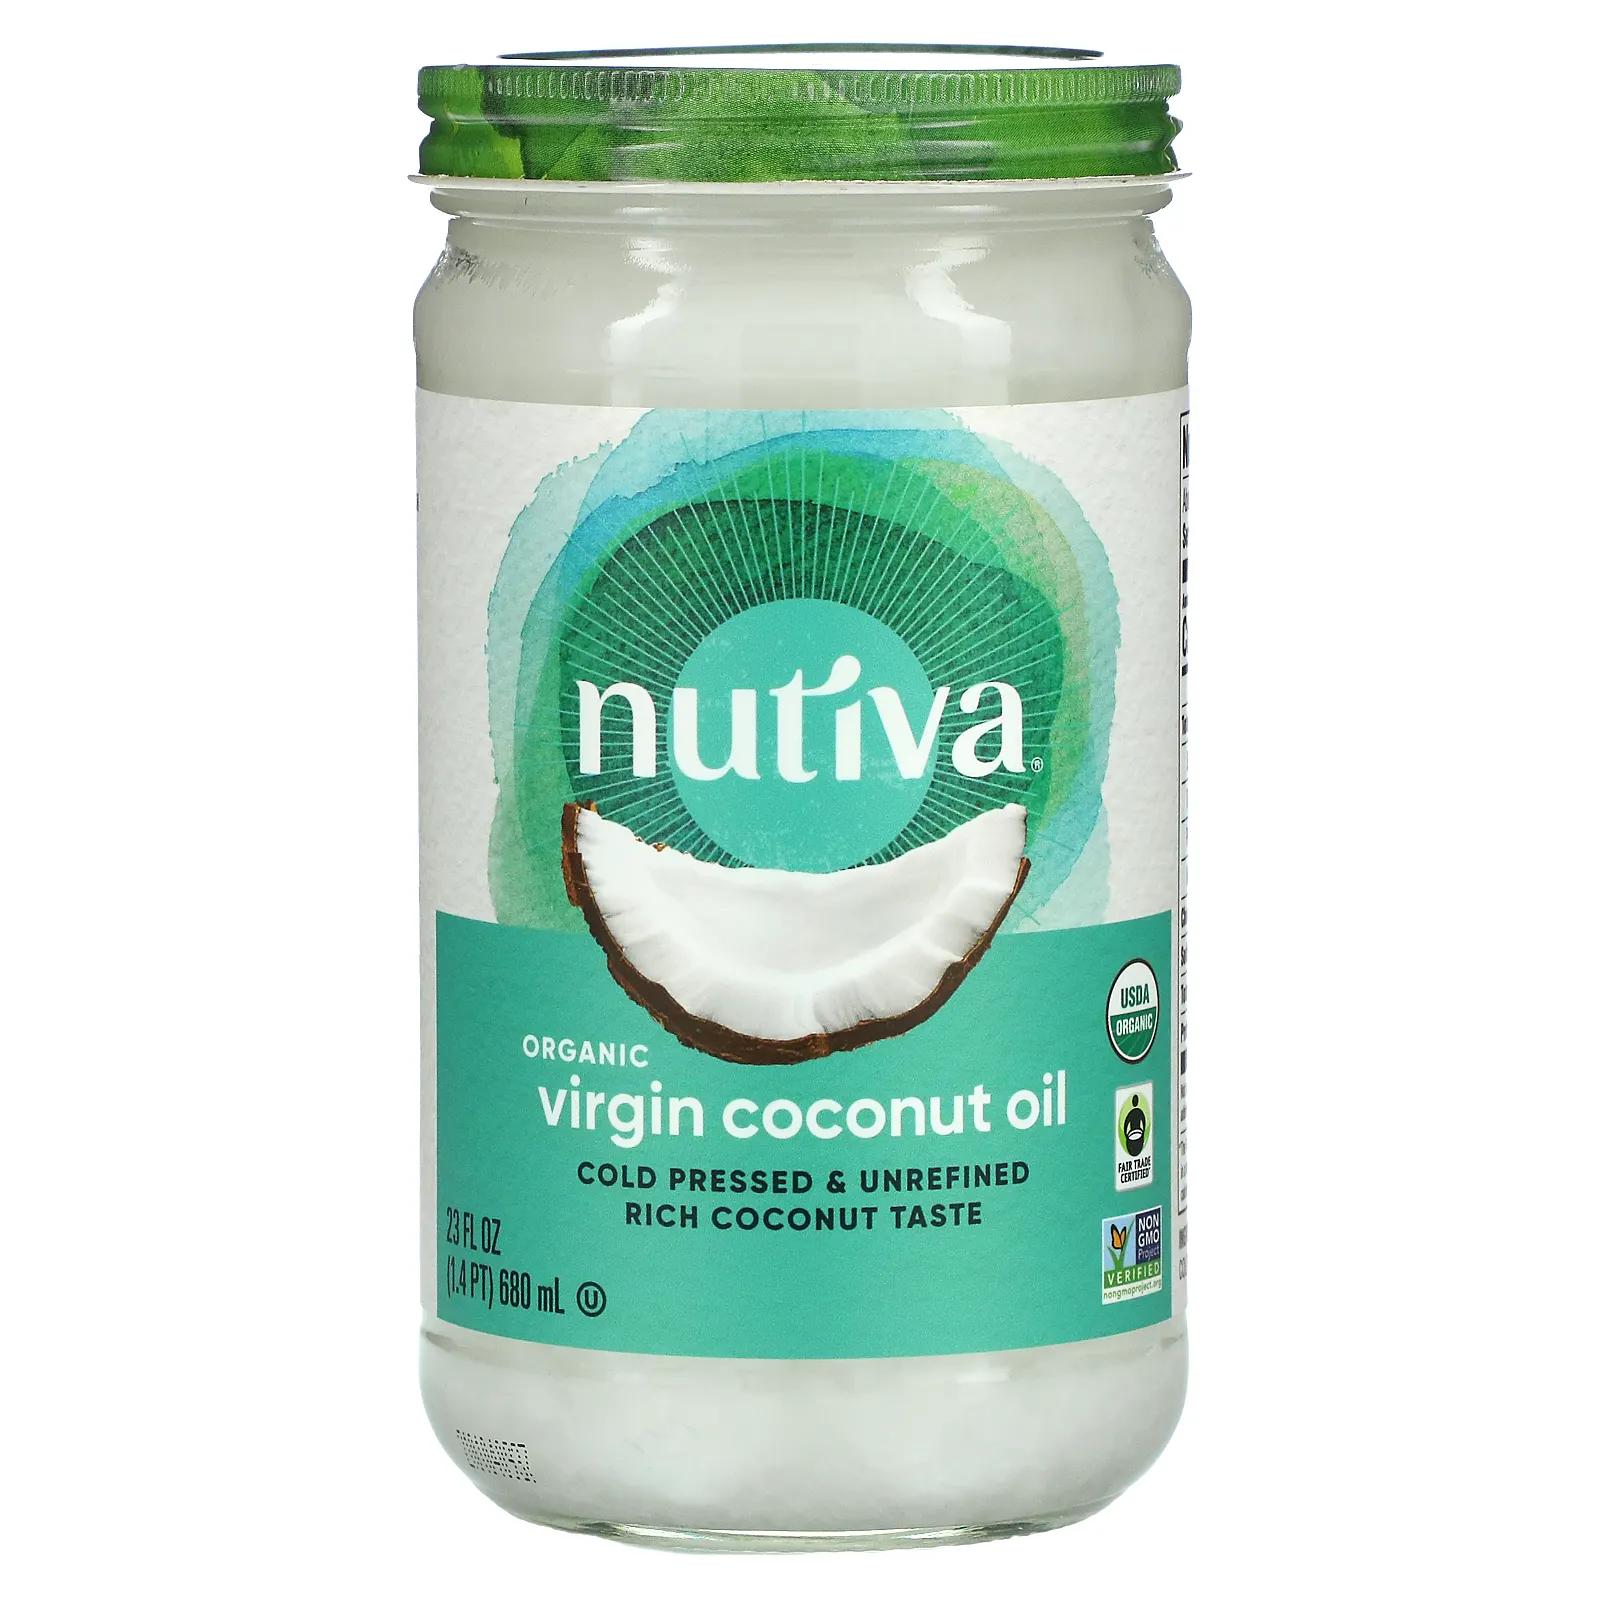 Nutiva Органическое кокосовое масло Virgin 23 жидкие унции (680 мл) nutiva 100% органическое кокосовое масло со среднецепочечными триглицеридами без ароматизаторов 946 мл 32 жидк унции